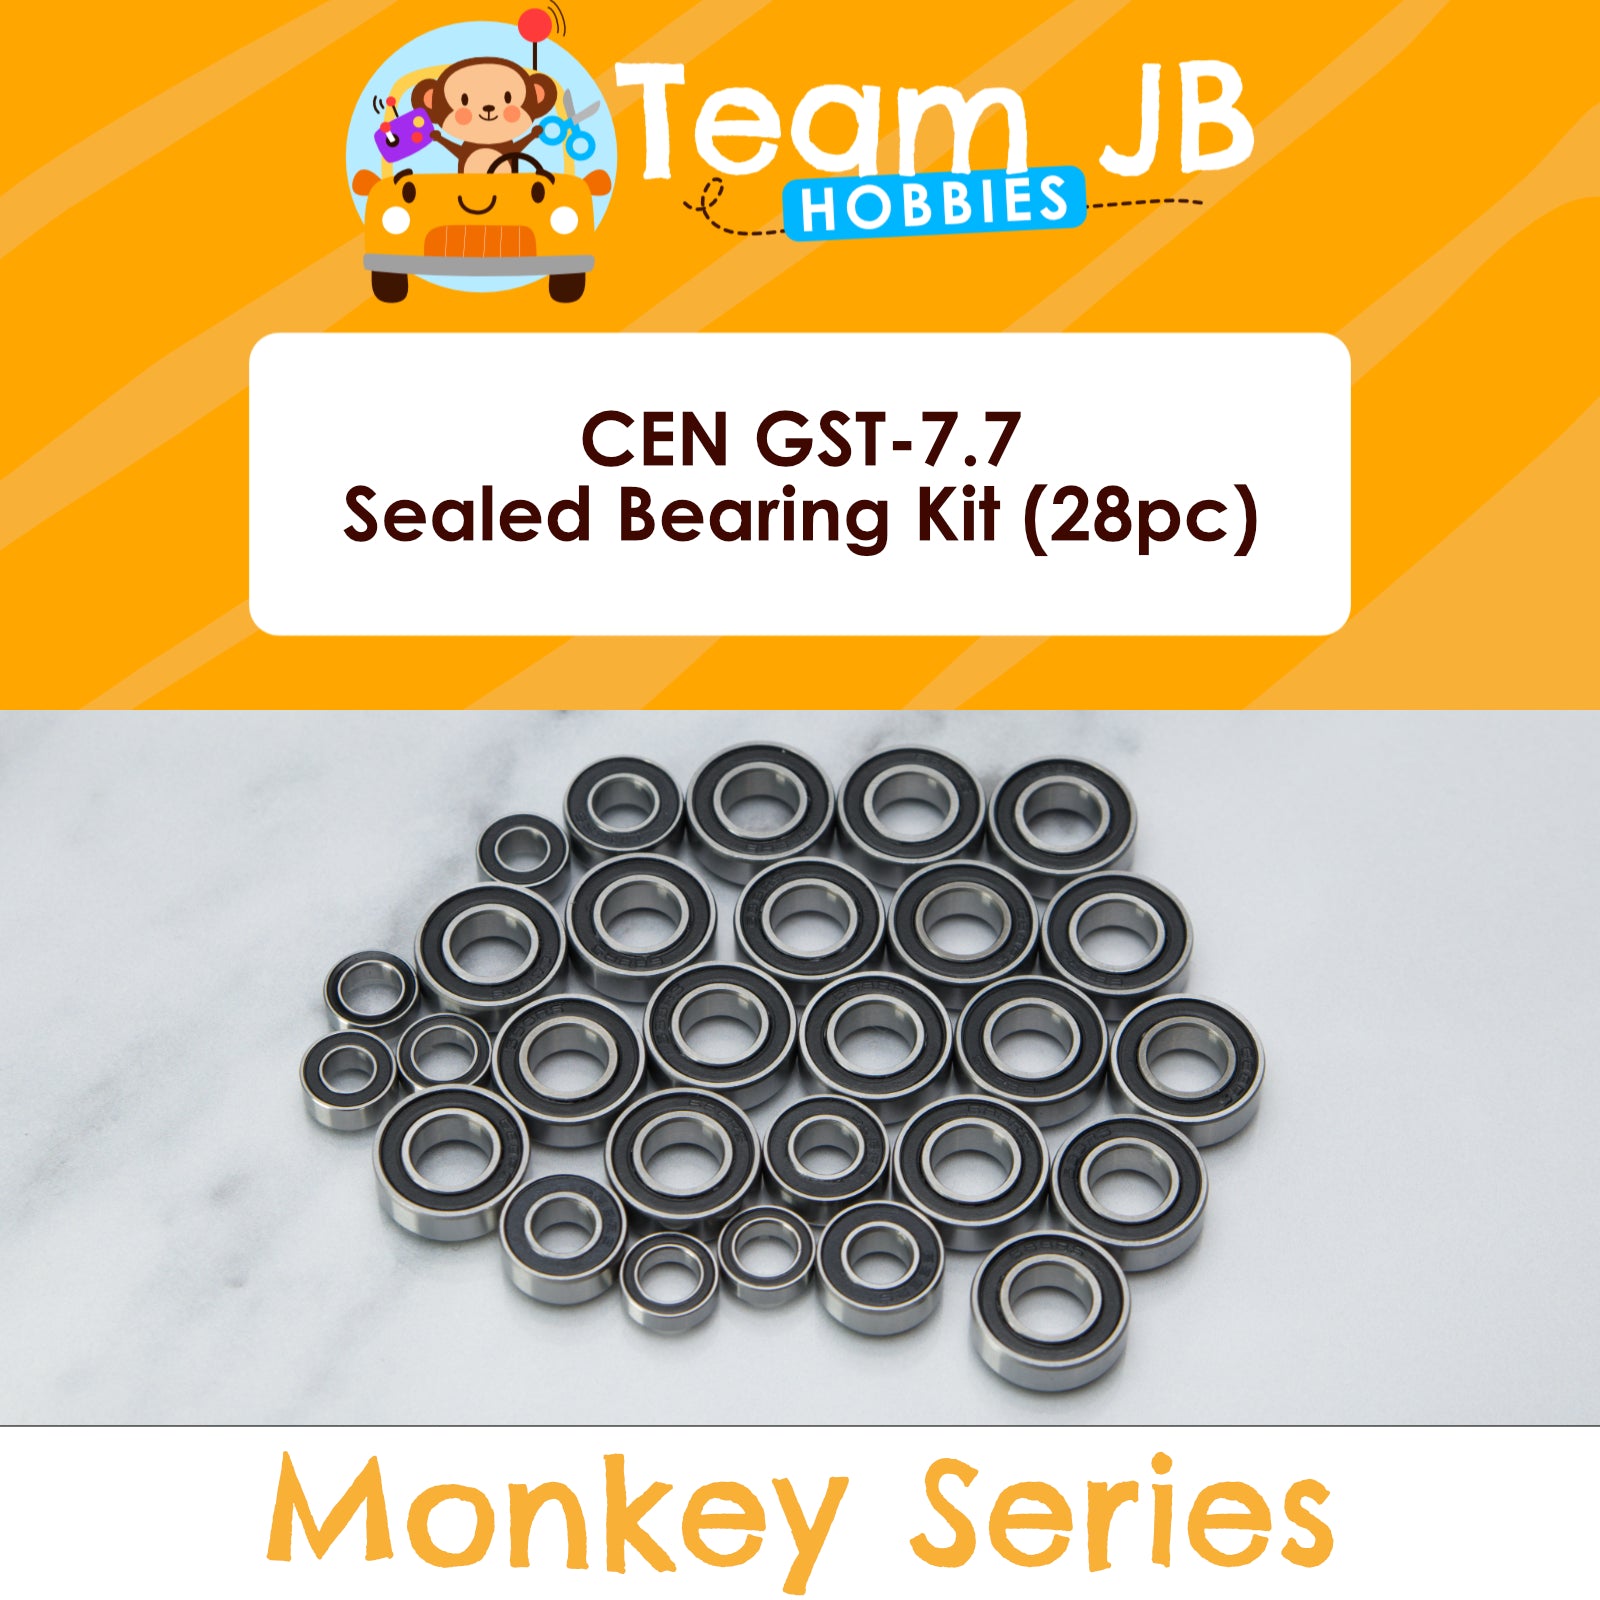 CEN GST-7.7 - Sealed Bearing Kit